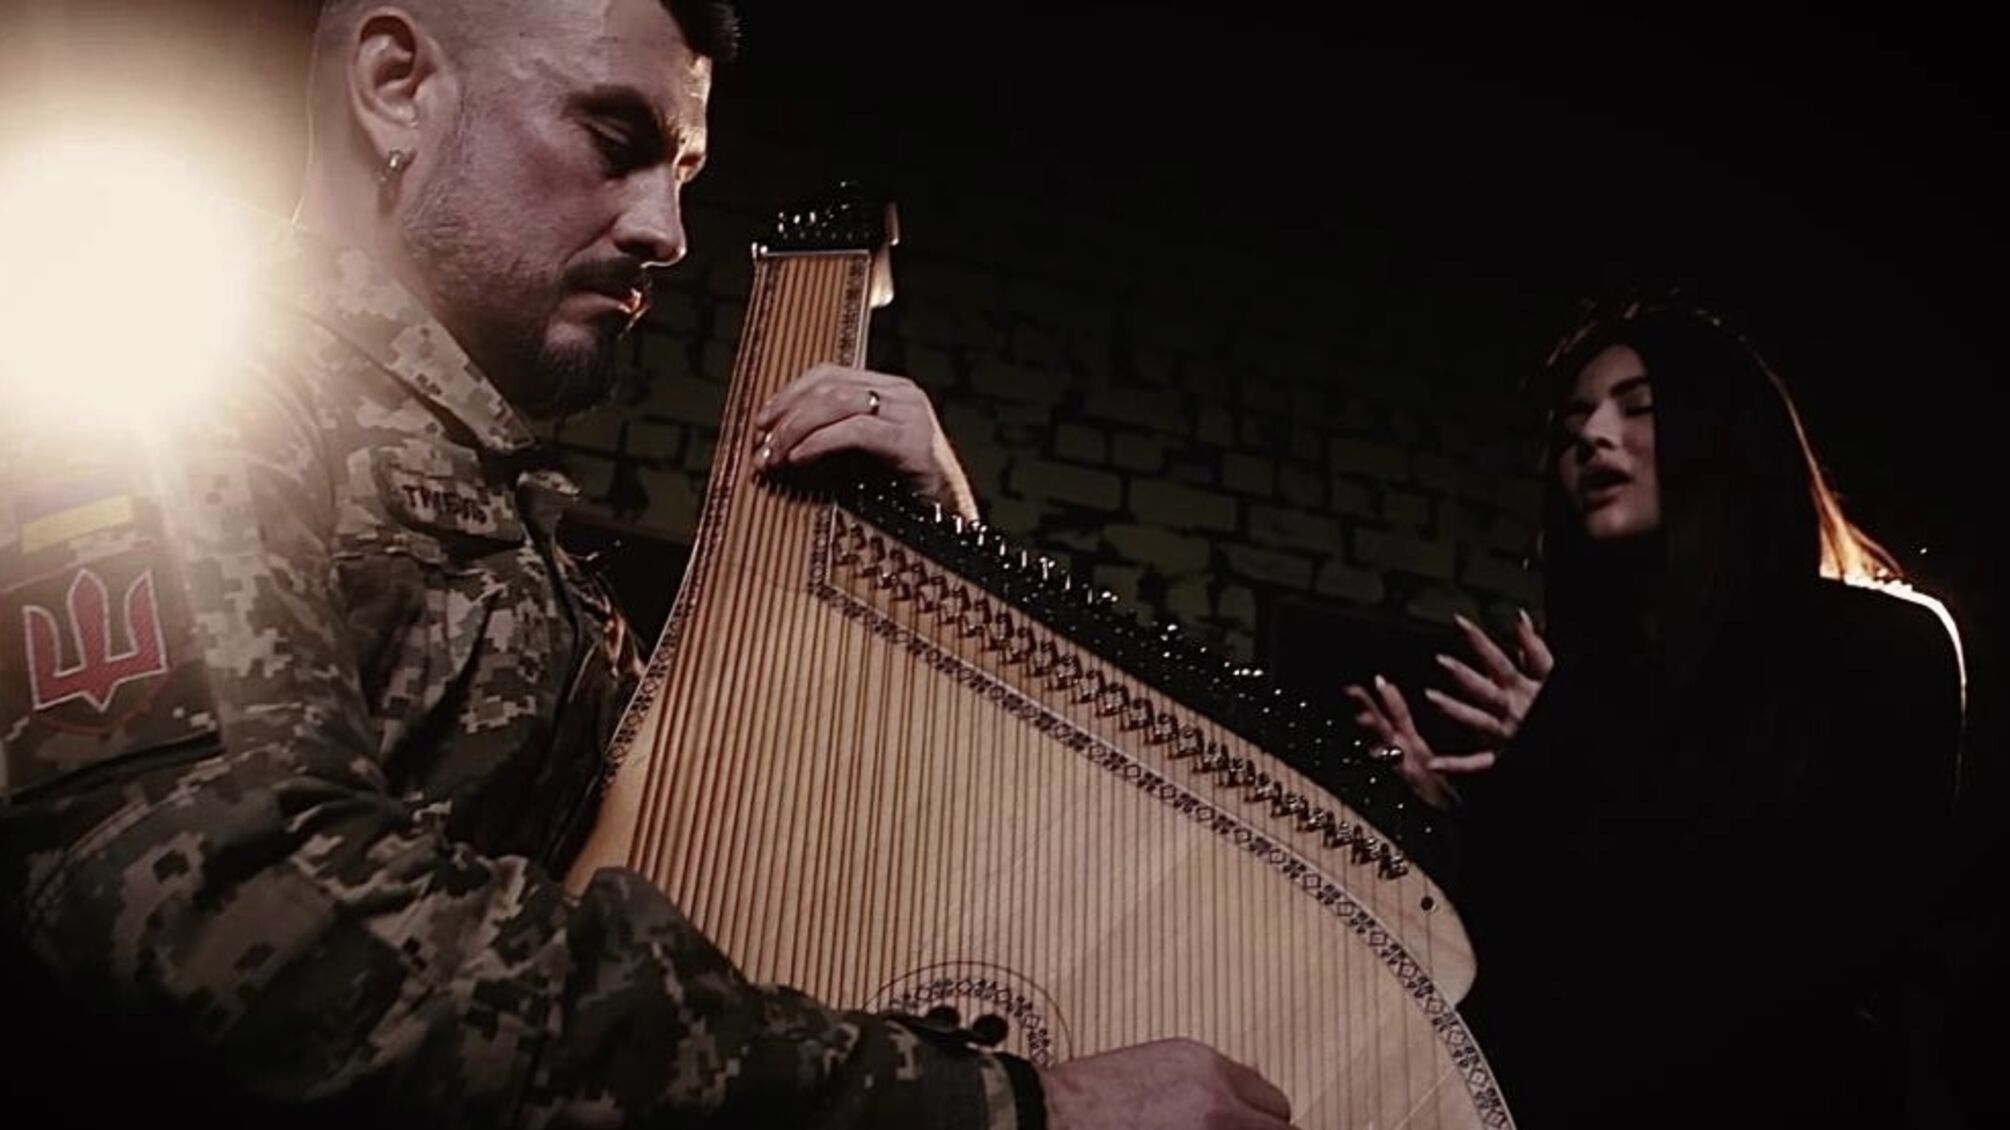 MASHA DANILOVA випустила трек разом із військовим — бандуристом Володимиром Трибелем KAPELA